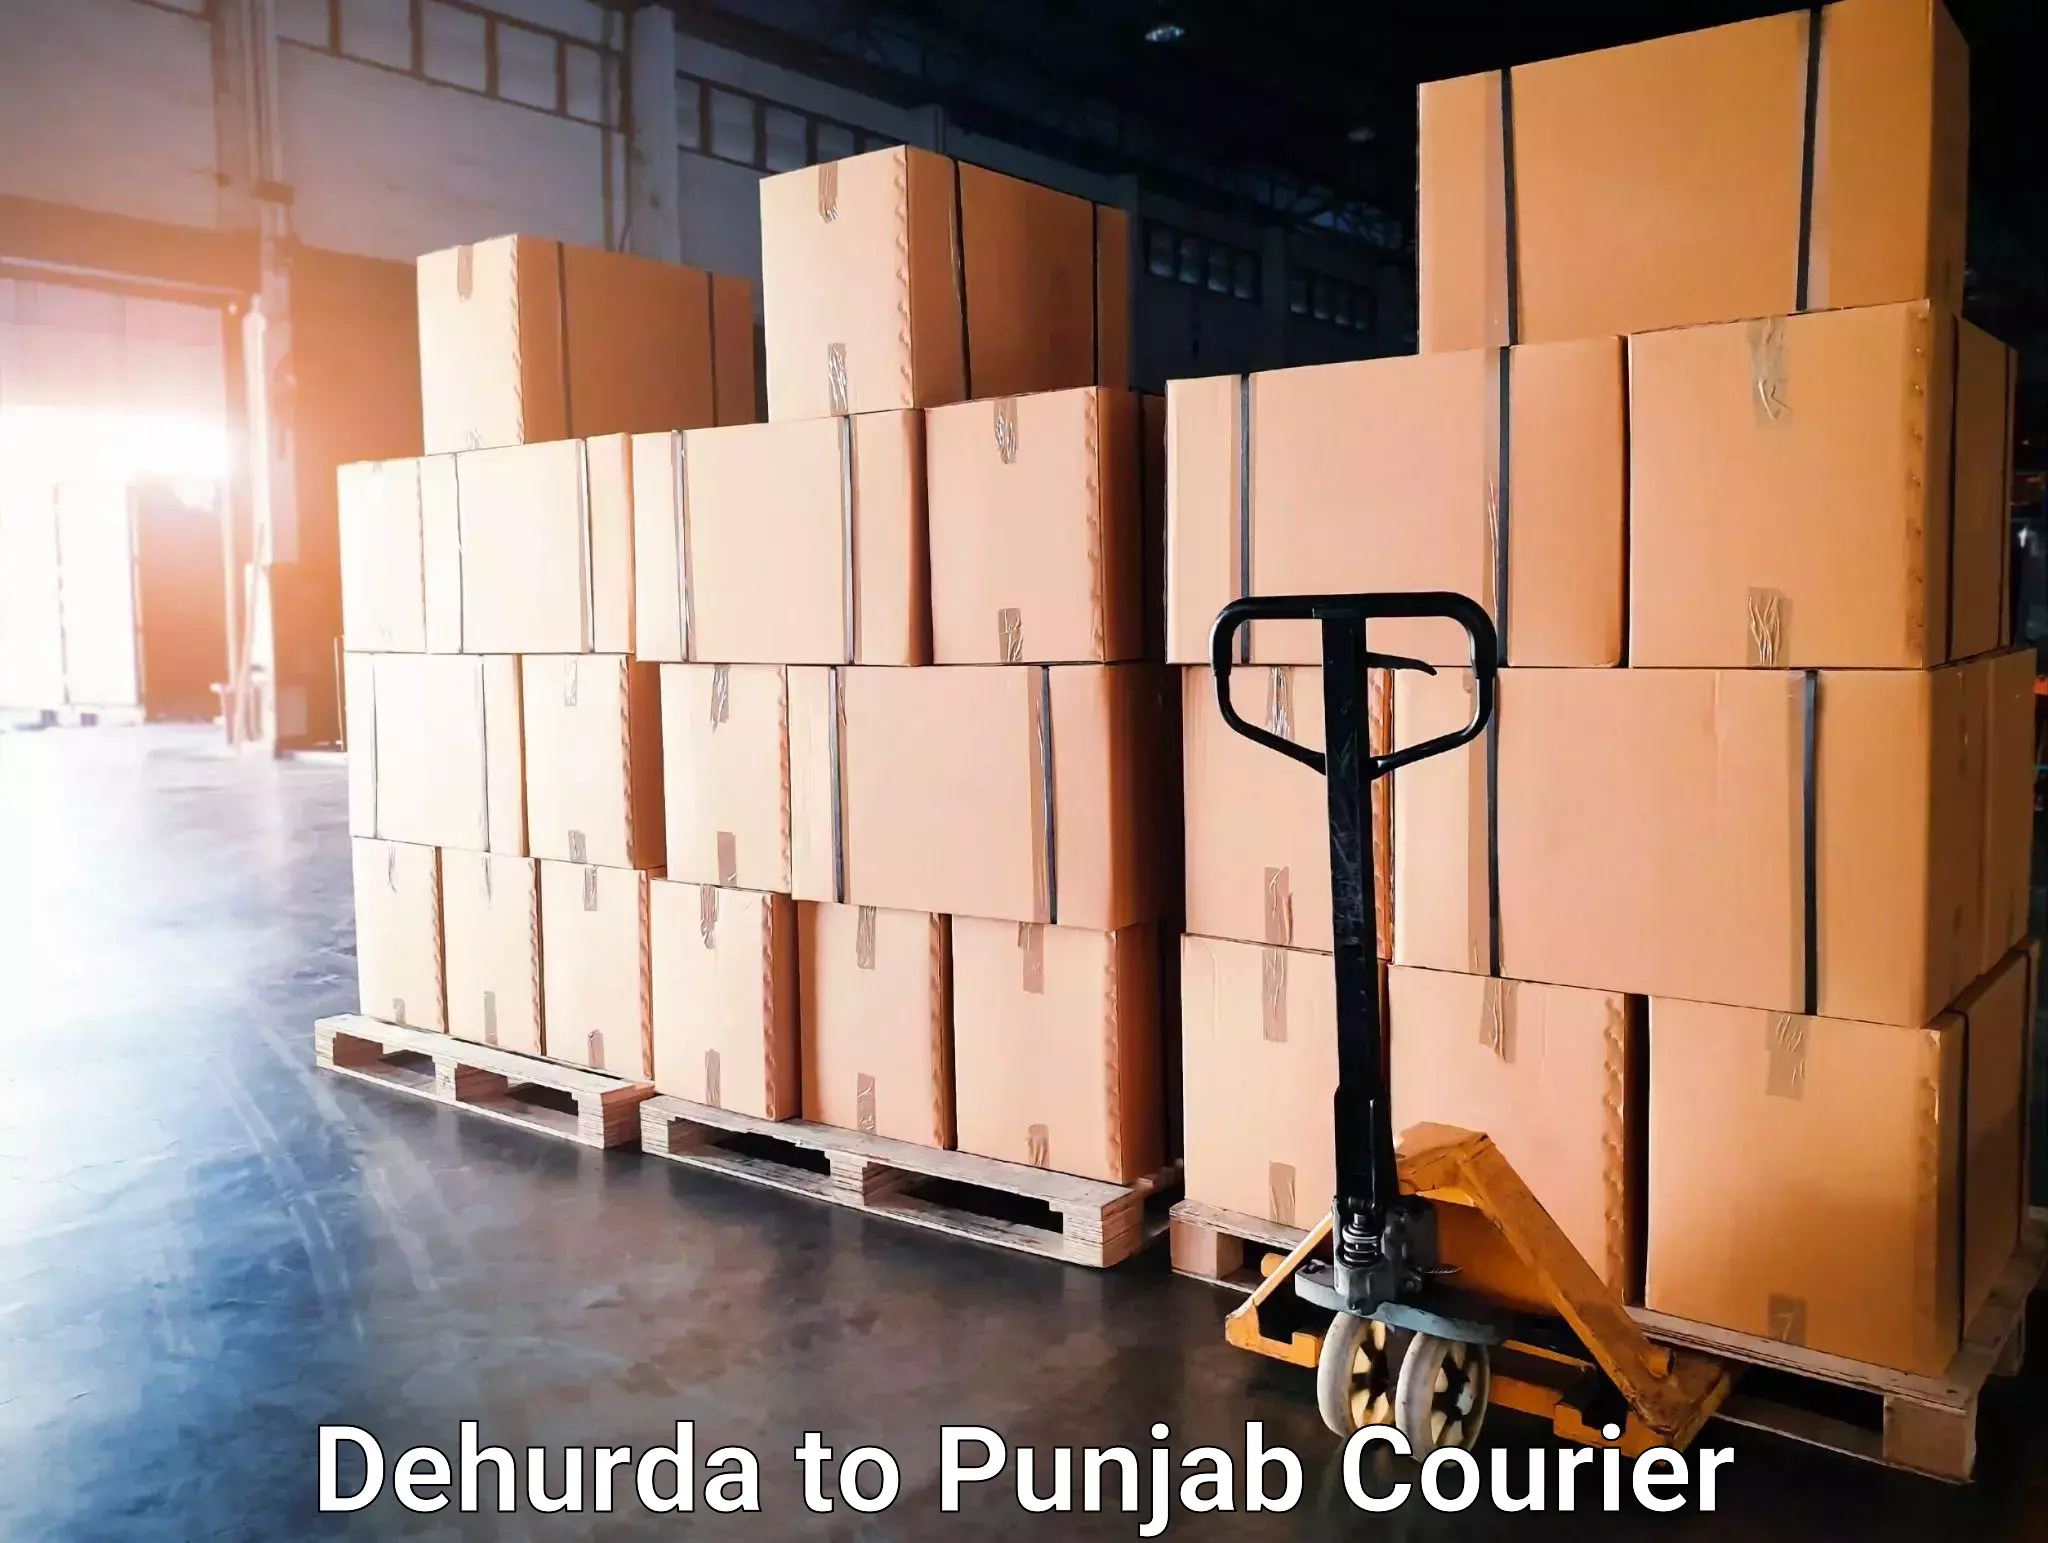 Courier dispatch services in Dehurda to Punjab